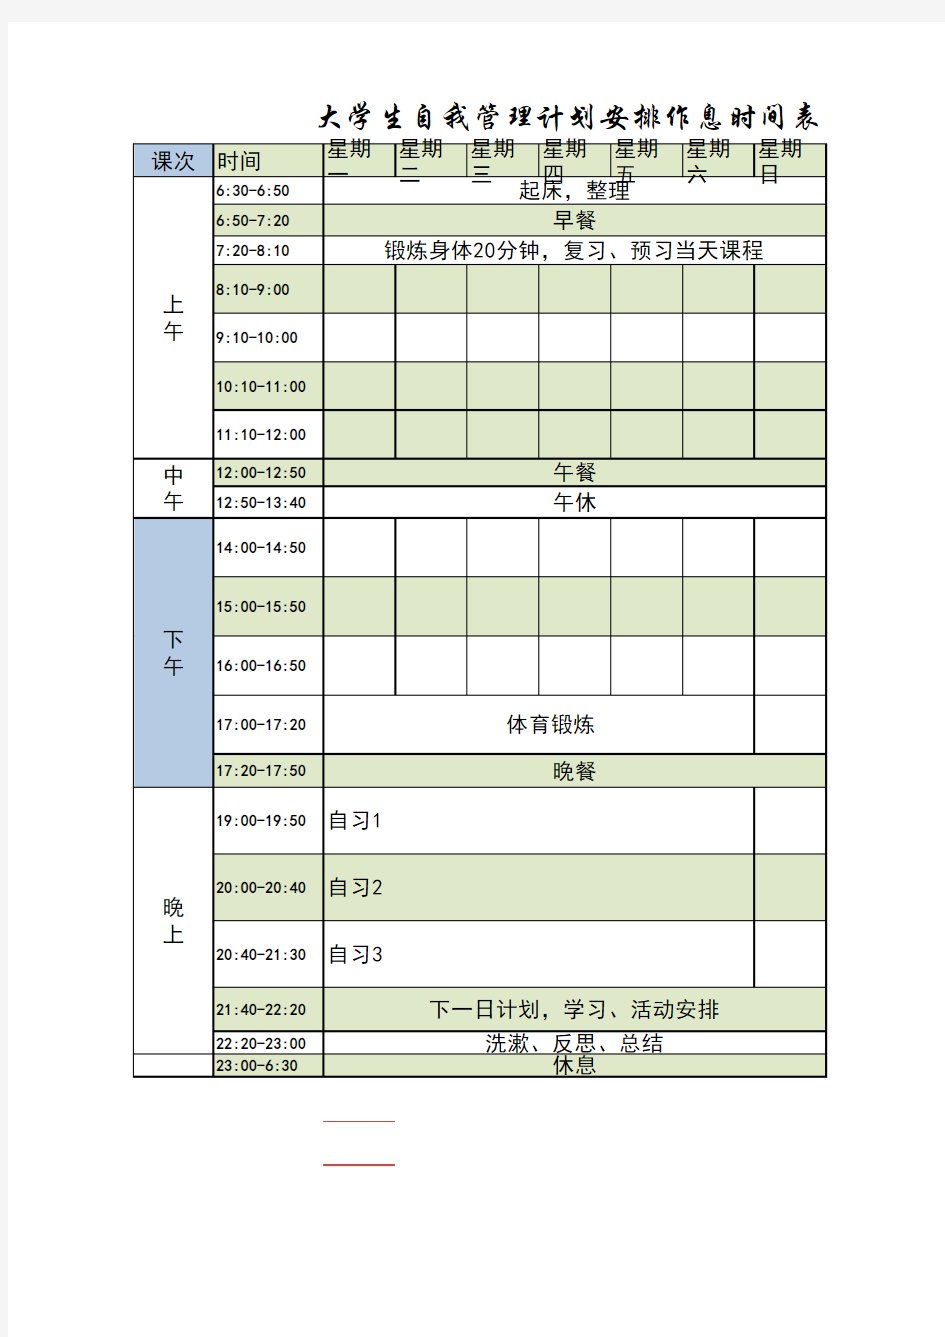 大学生自我管理计划安排作息时间表(模板)